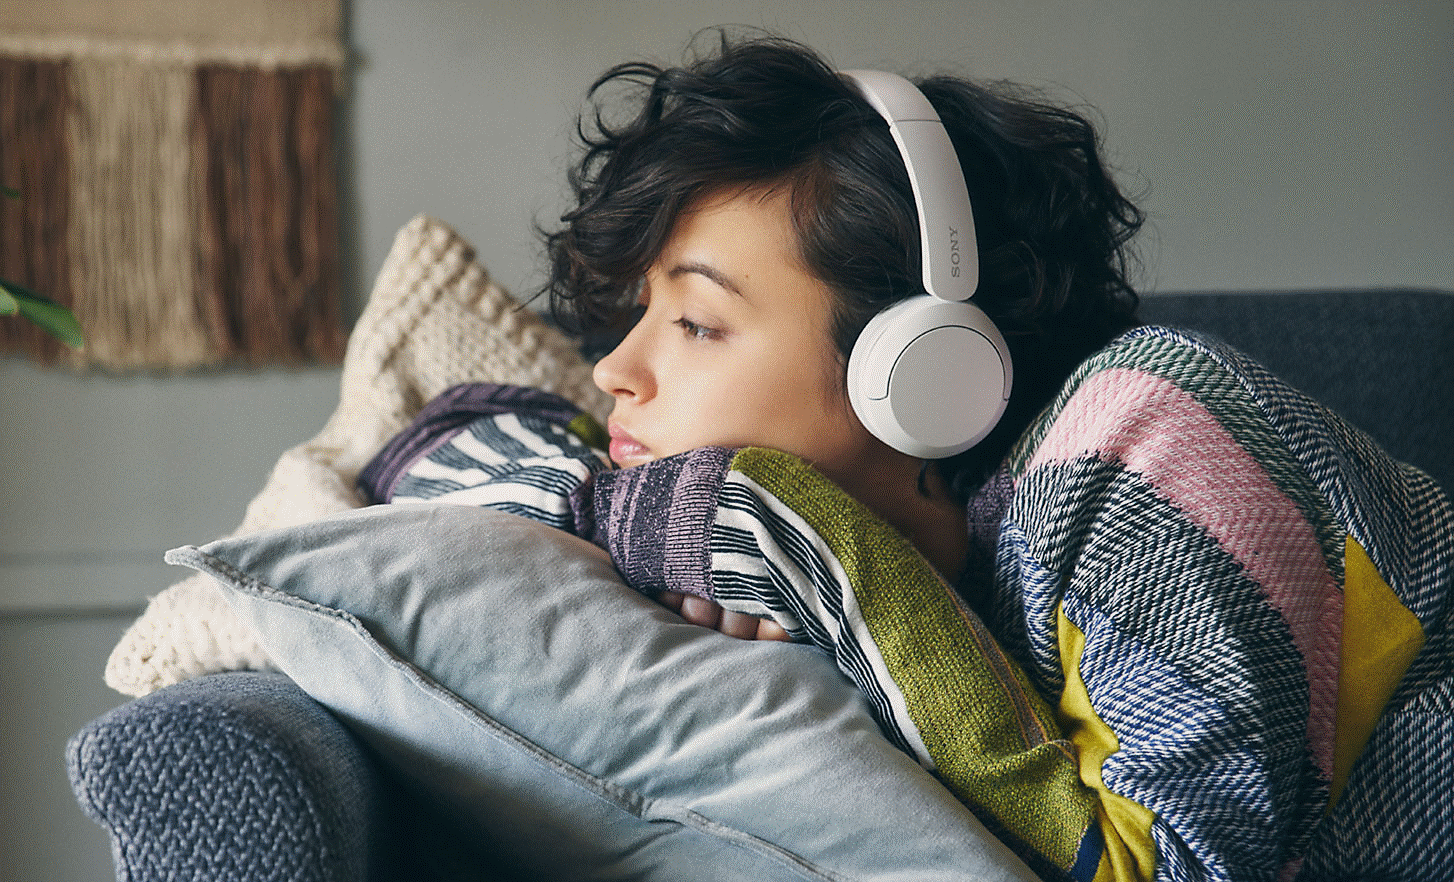 Bild einer Frau, die auf einem grauen Sofa liegt und weiße WH-CH520 Kopfhörer von Sony trägt